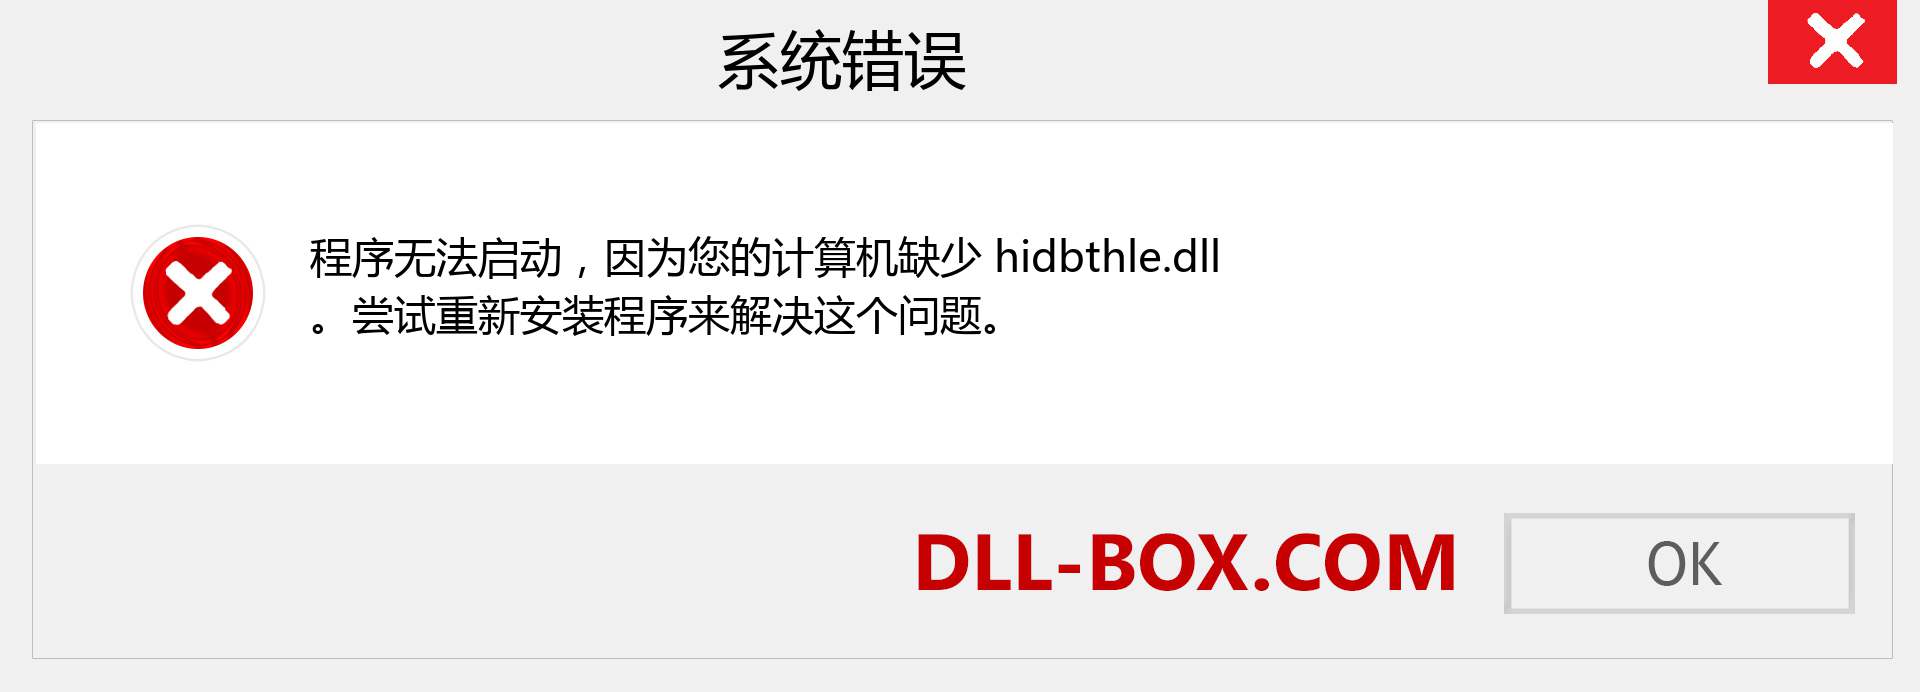 hidbthle.dll 文件丢失？。 适用于 Windows 7、8、10 的下载 - 修复 Windows、照片、图像上的 hidbthle dll 丢失错误